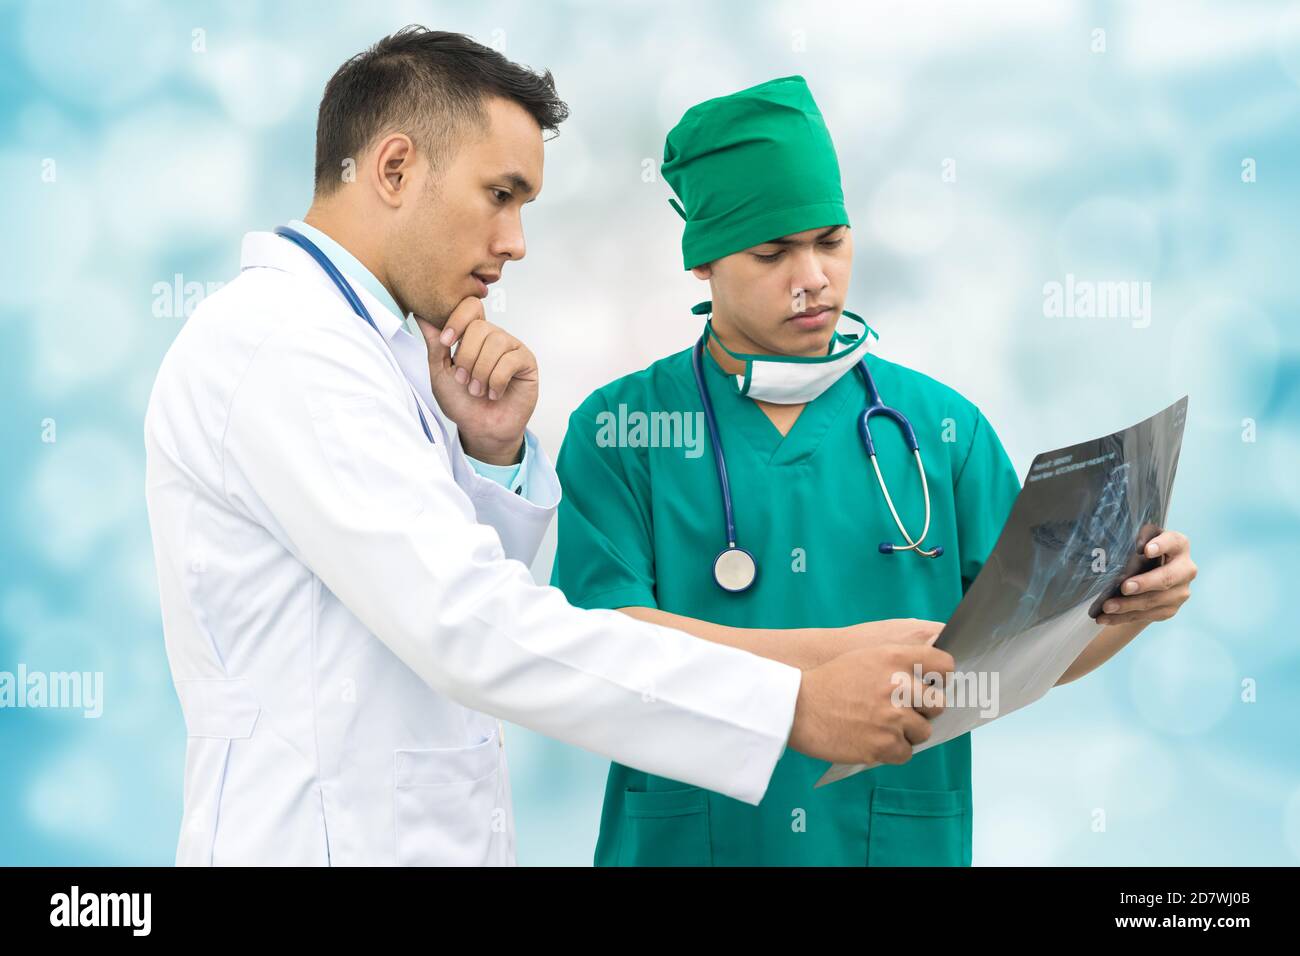 Medico e chirurgo che guarda la pellicola di raggi X, diagnosticare la malattia del paziente nell'ospedale. Concetto medico. Foto Stock